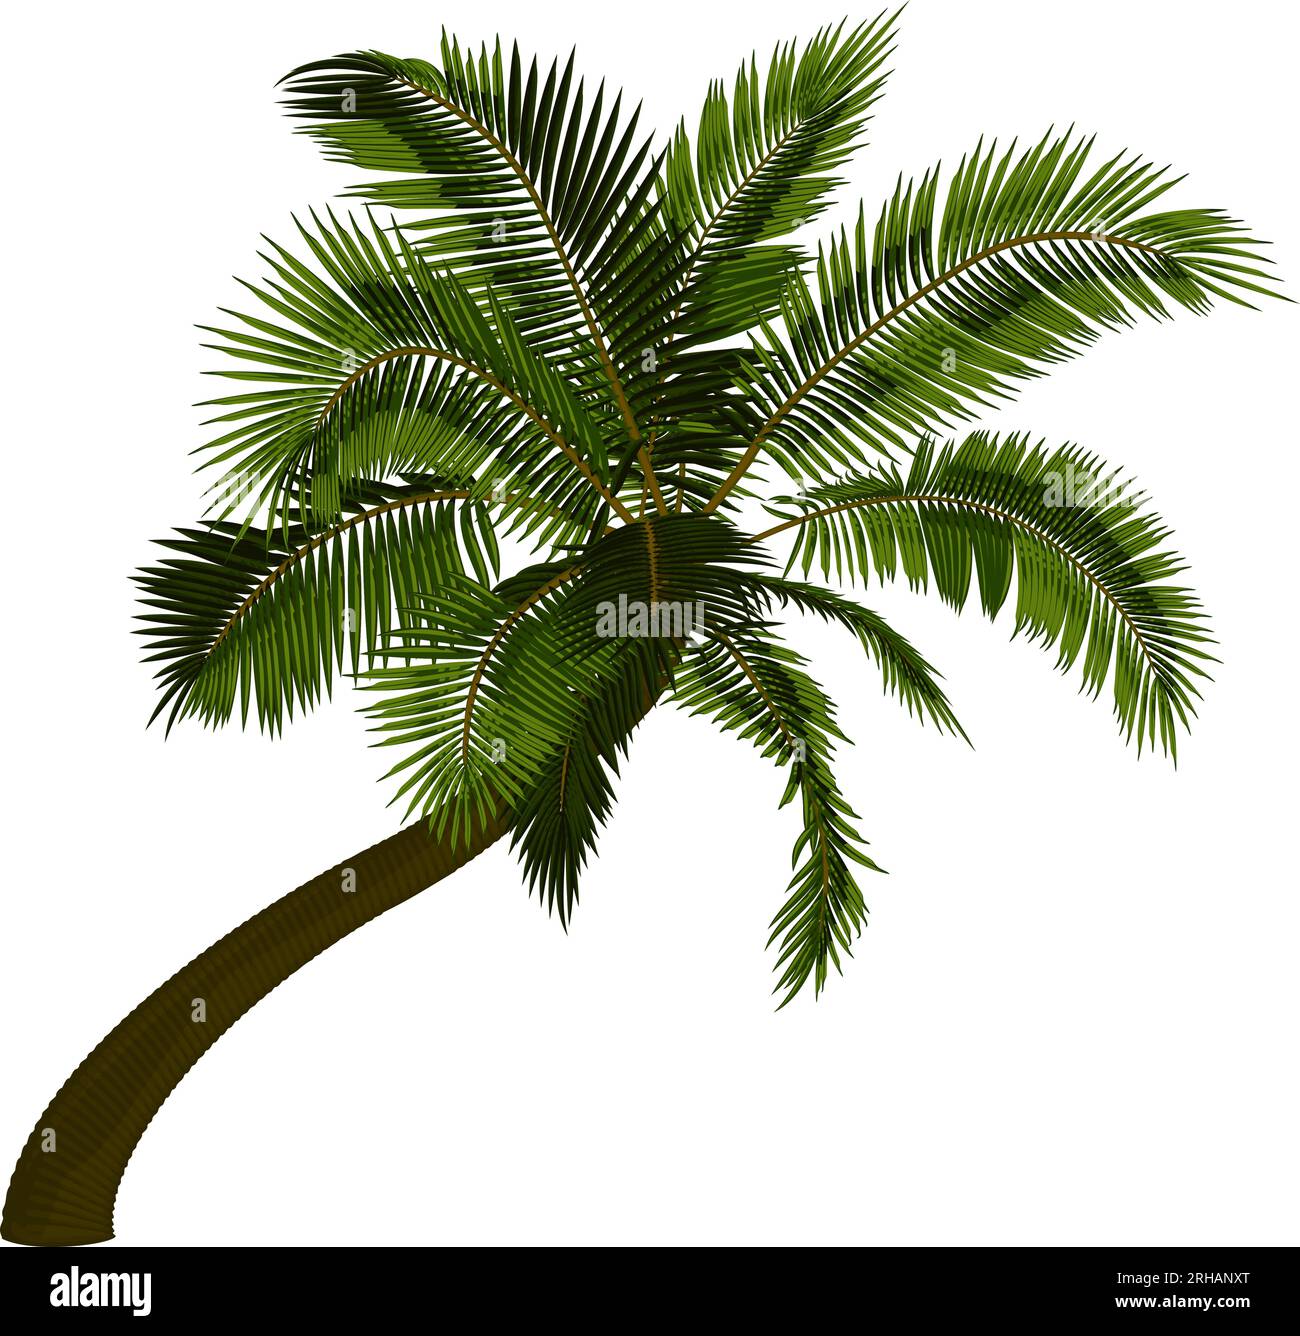 Palmera de coco doblada. Ilustración vectorial de palmera inclinada. Imagen del tronco de la palmera tropical, follaje, ramas, hojas en vector. Ilustración del Vector